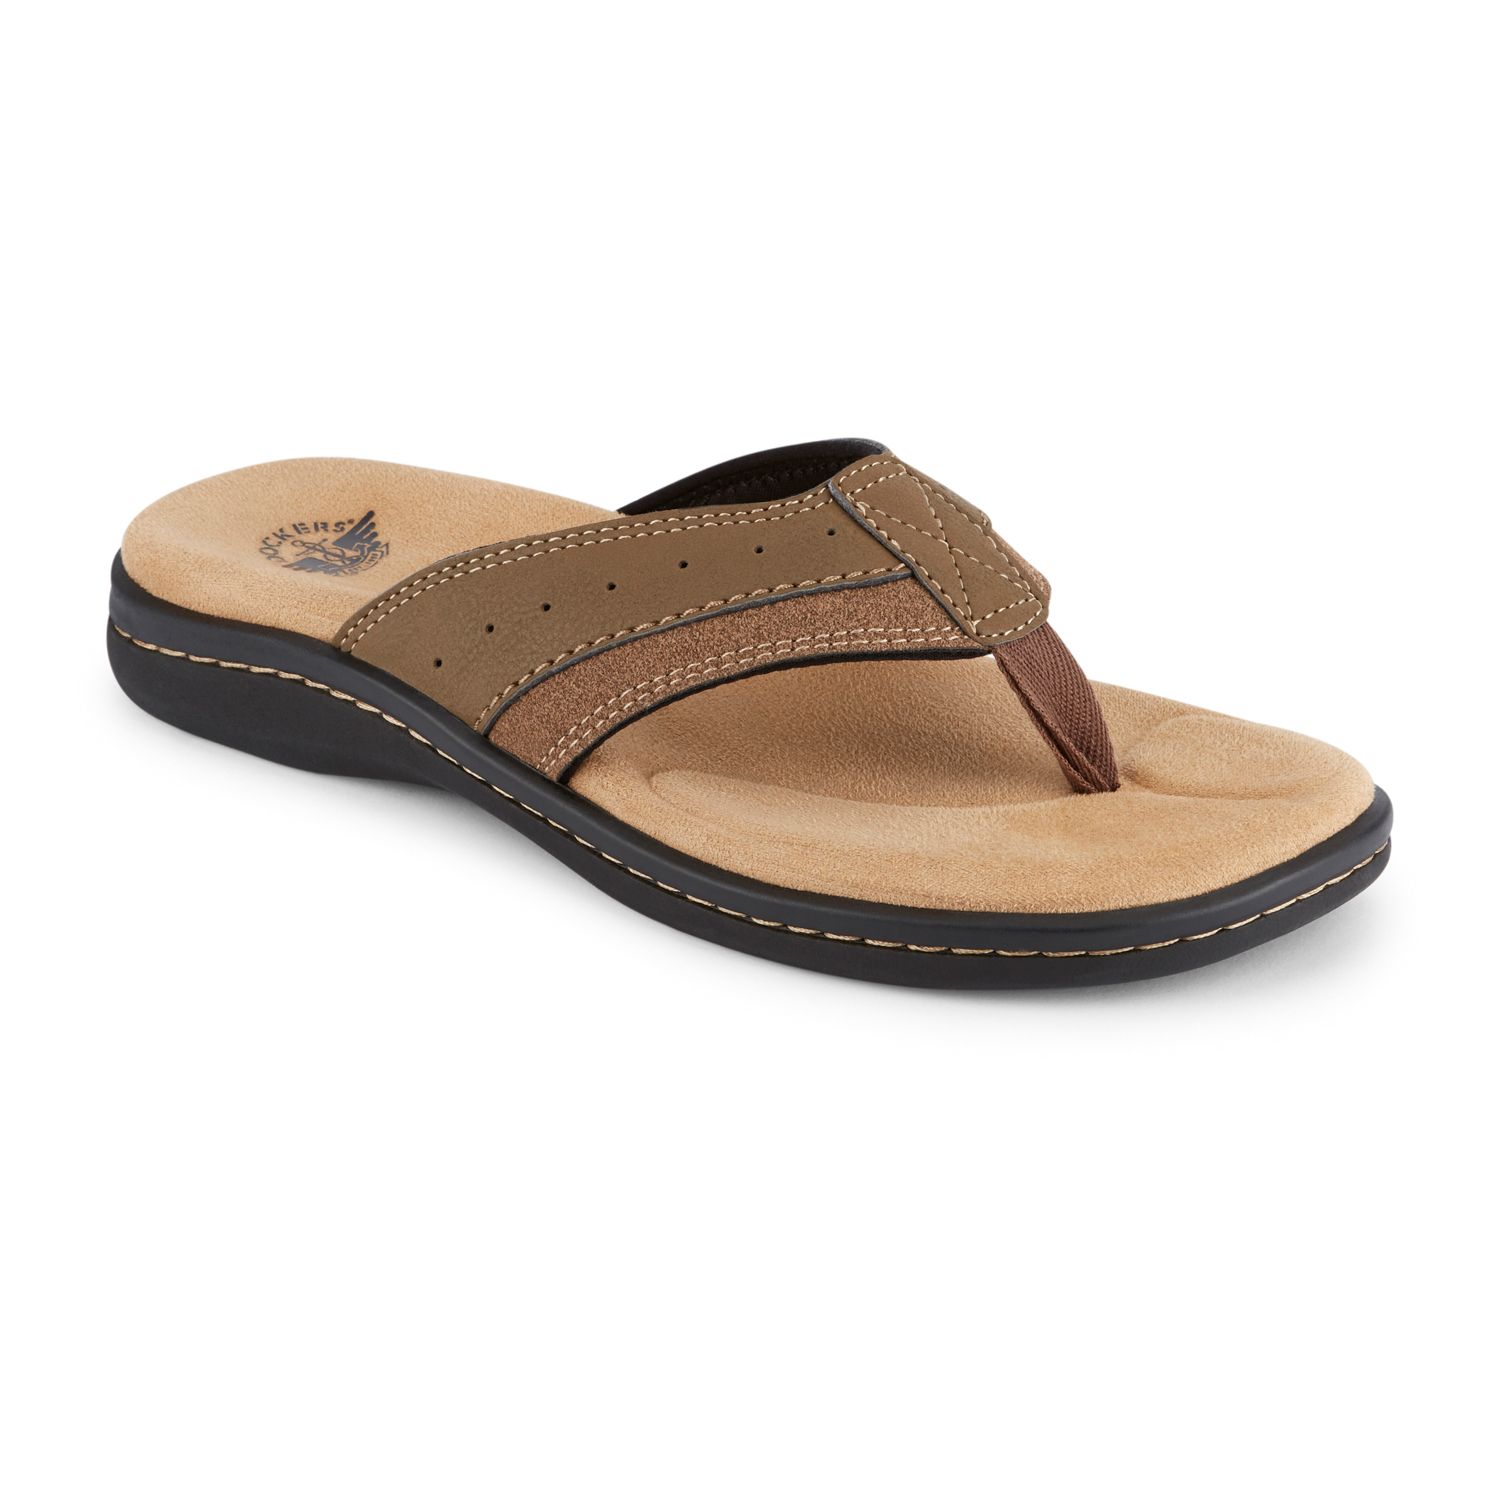 nike comfort slide 2 sandals